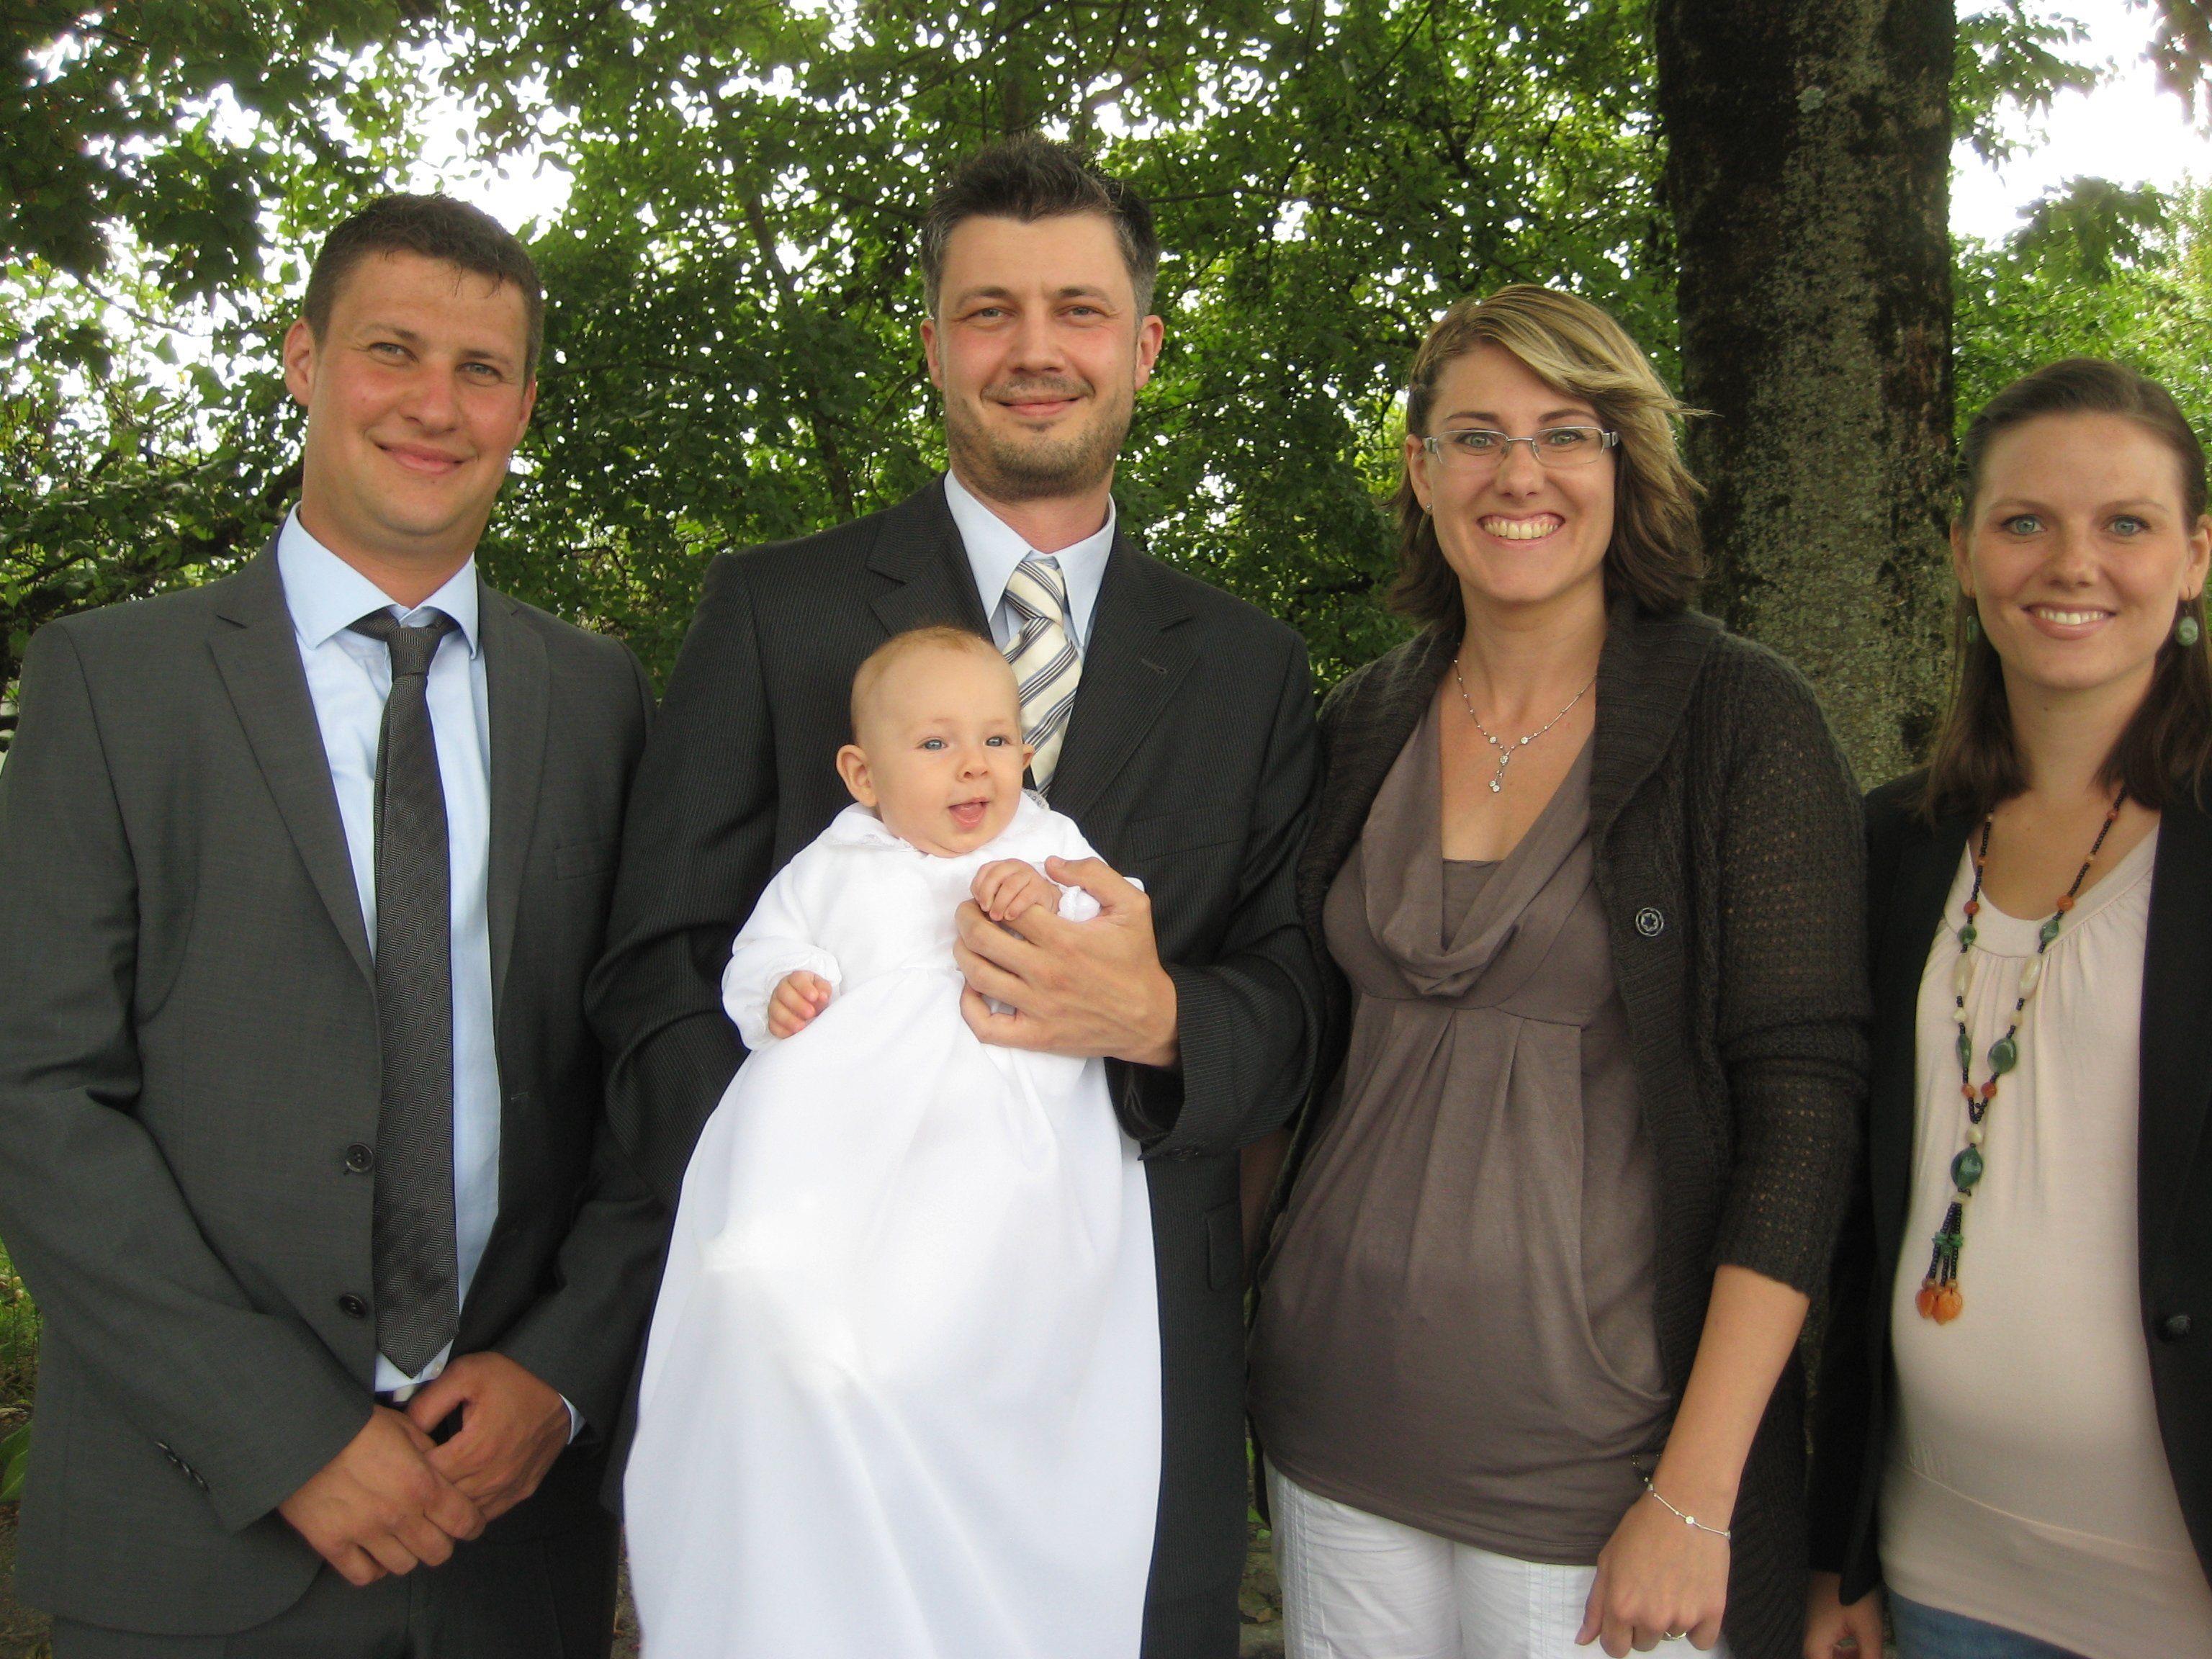 Getauft wurde Luisa Neuriesser am 23. August 2014 in der Lorettokapelle.